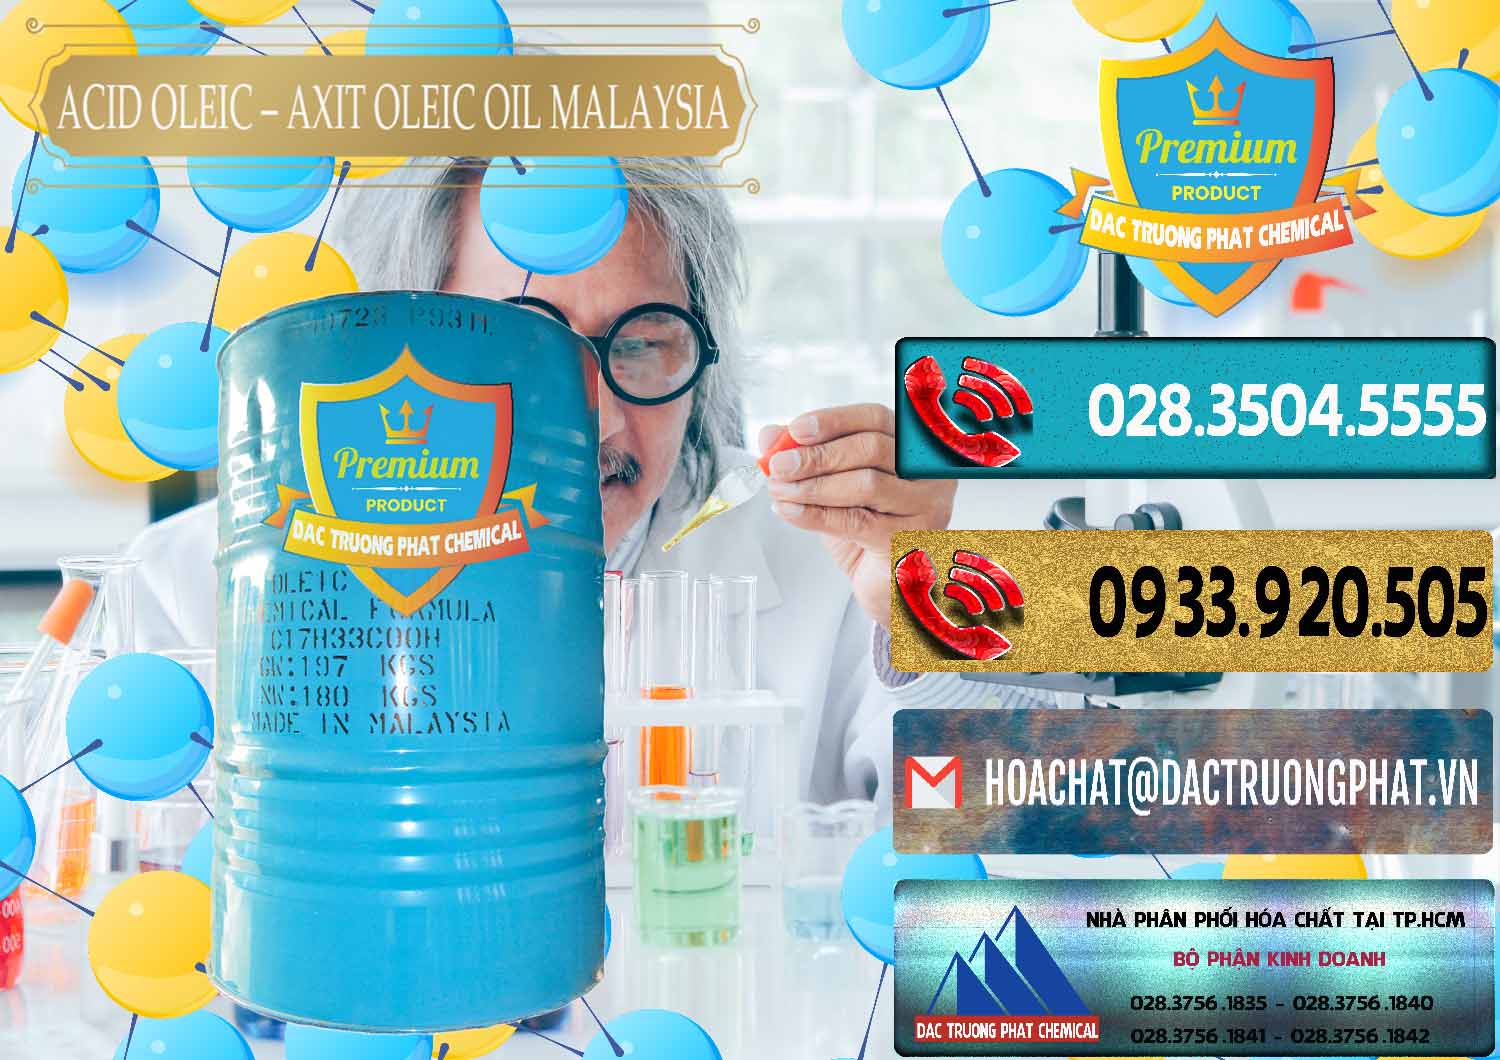 Cty chuyên cung cấp & bán Acid Oleic – Axit Oleic Oil Malaysia - 0013 - Nơi chuyên cung cấp - nhập khẩu hóa chất tại TP.HCM - hoachatdetnhuom.com